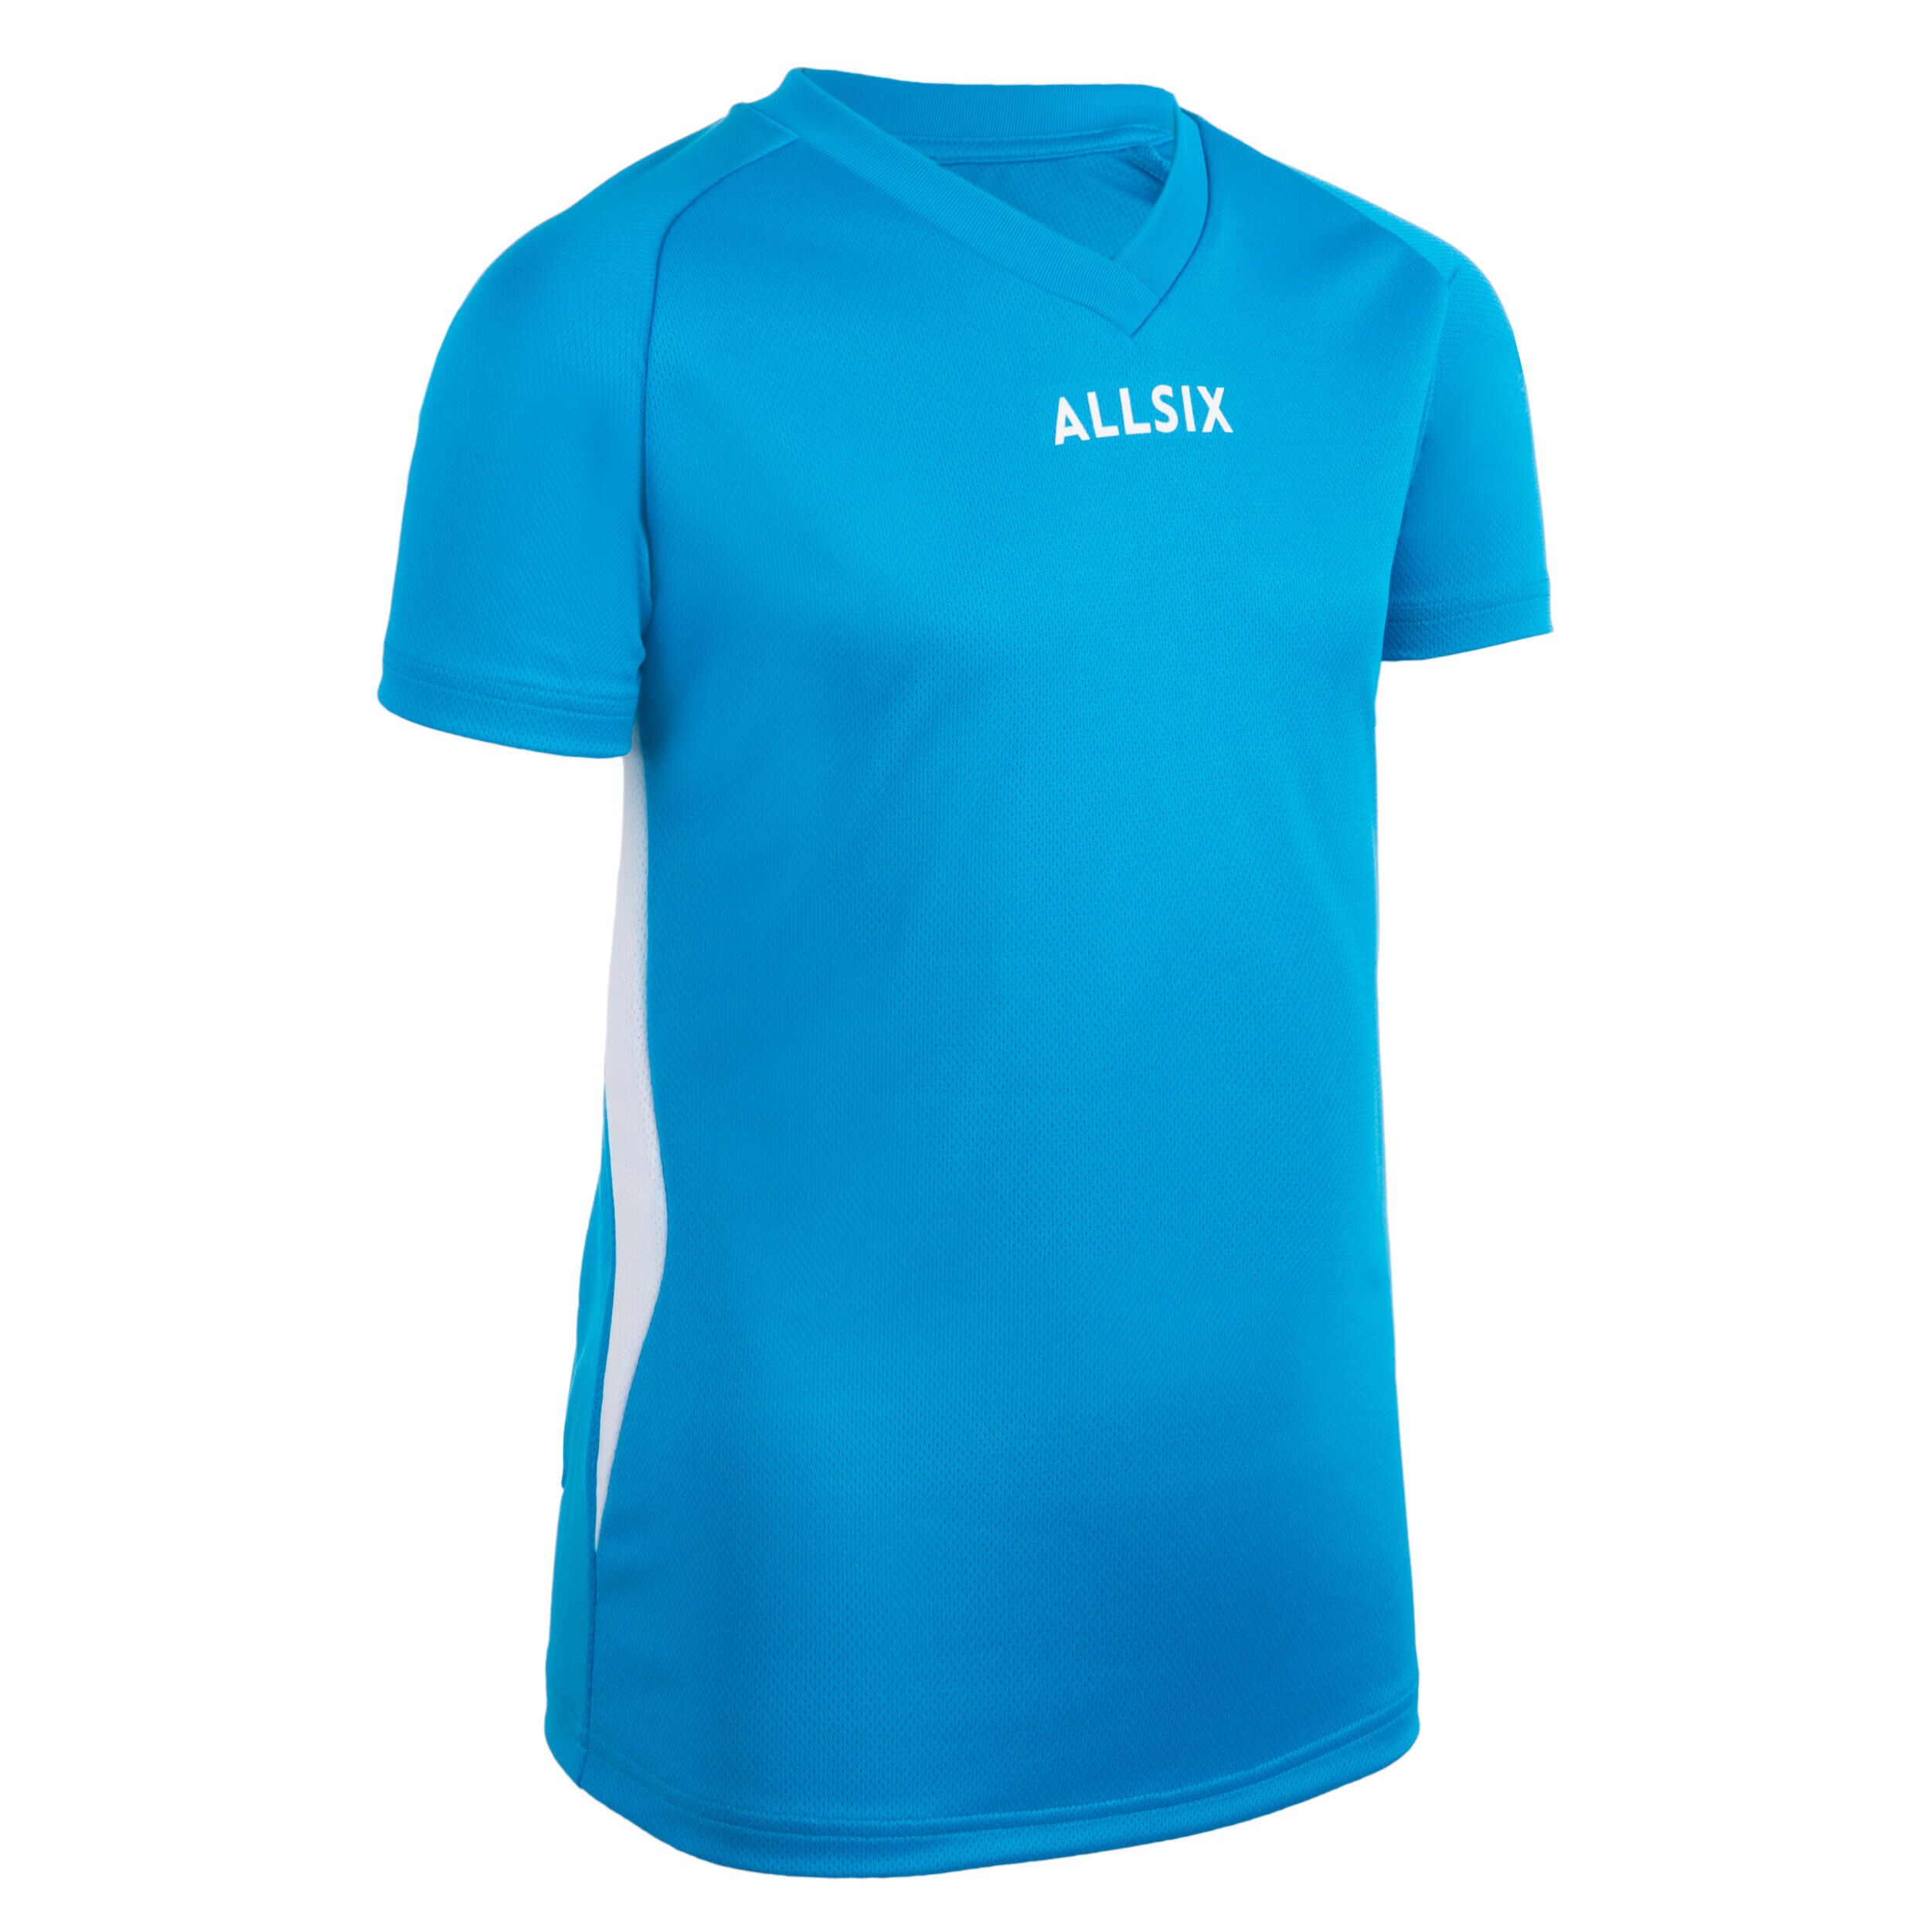 ALLSIX V100 Boys' Volleyball Jersey - Blue